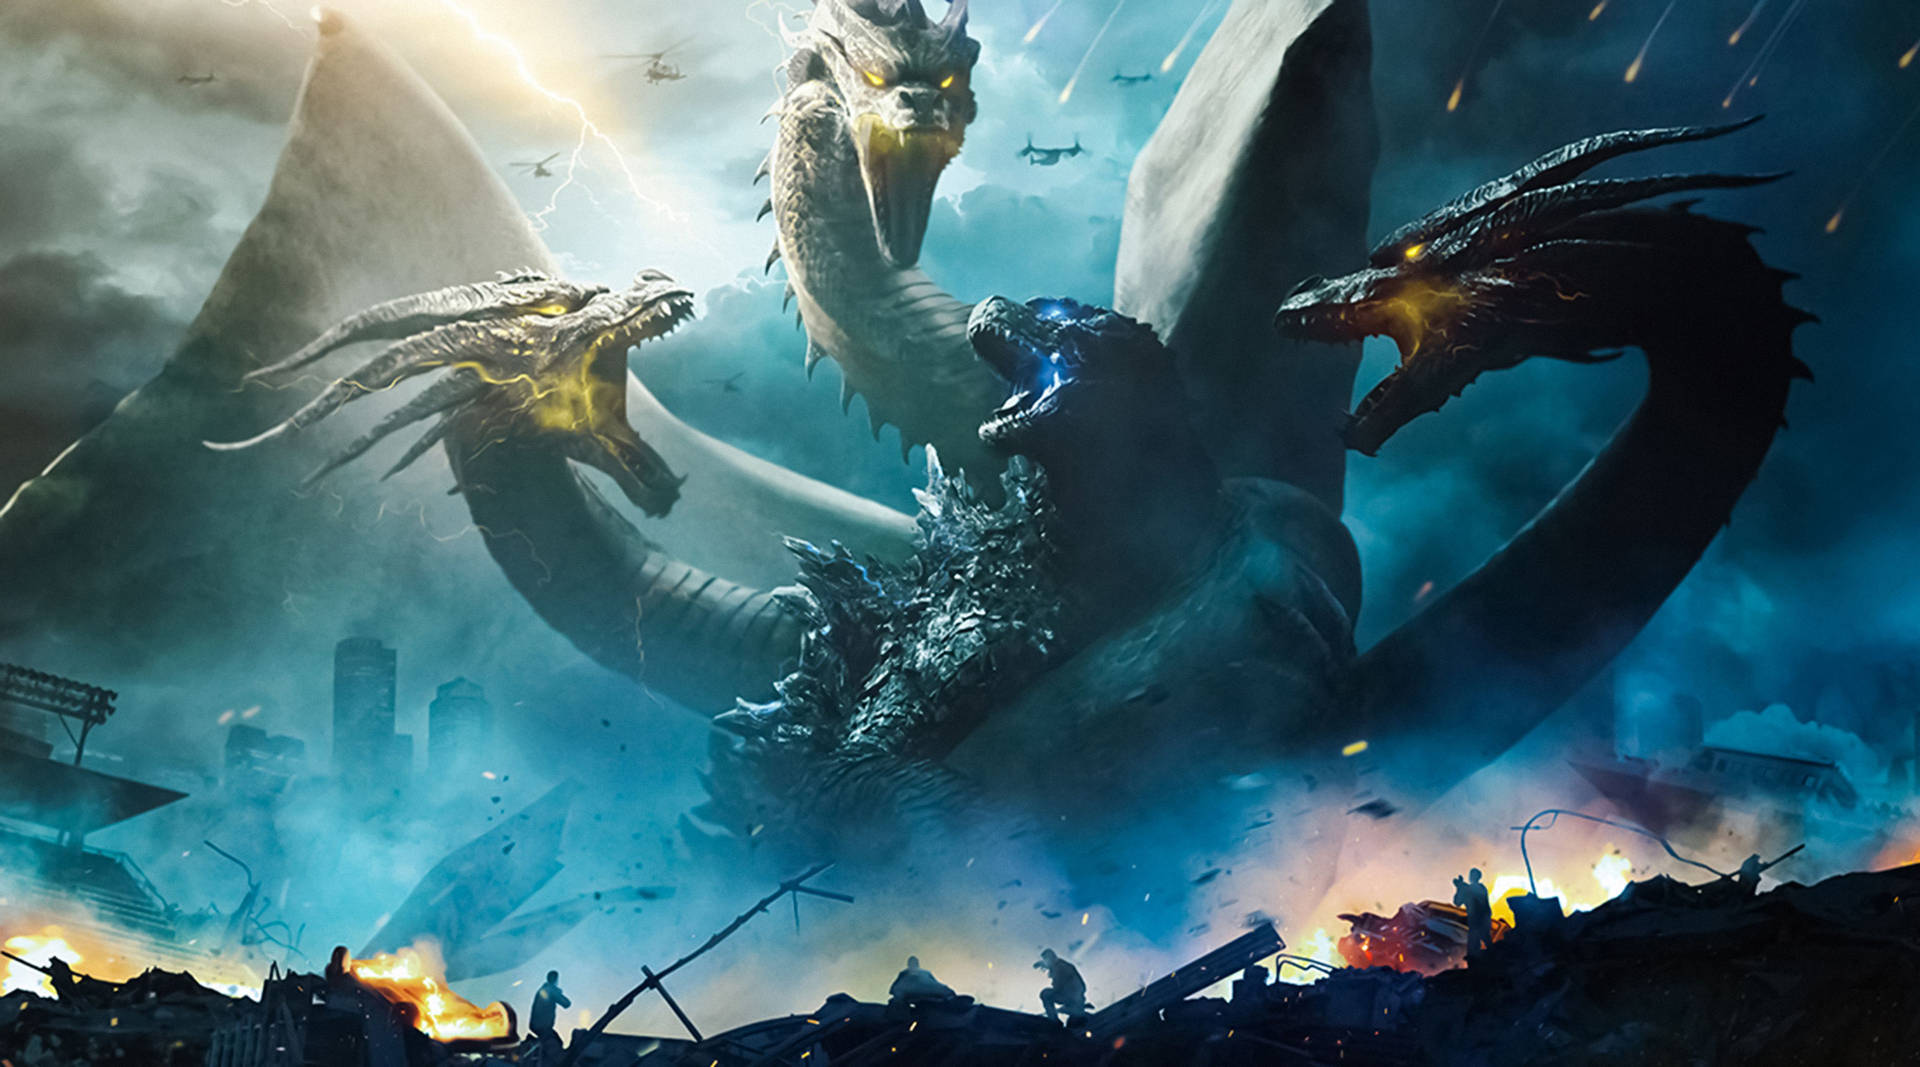 Top 999+ Godzilla Wallpaper Full HD, 4K✅Free to Use